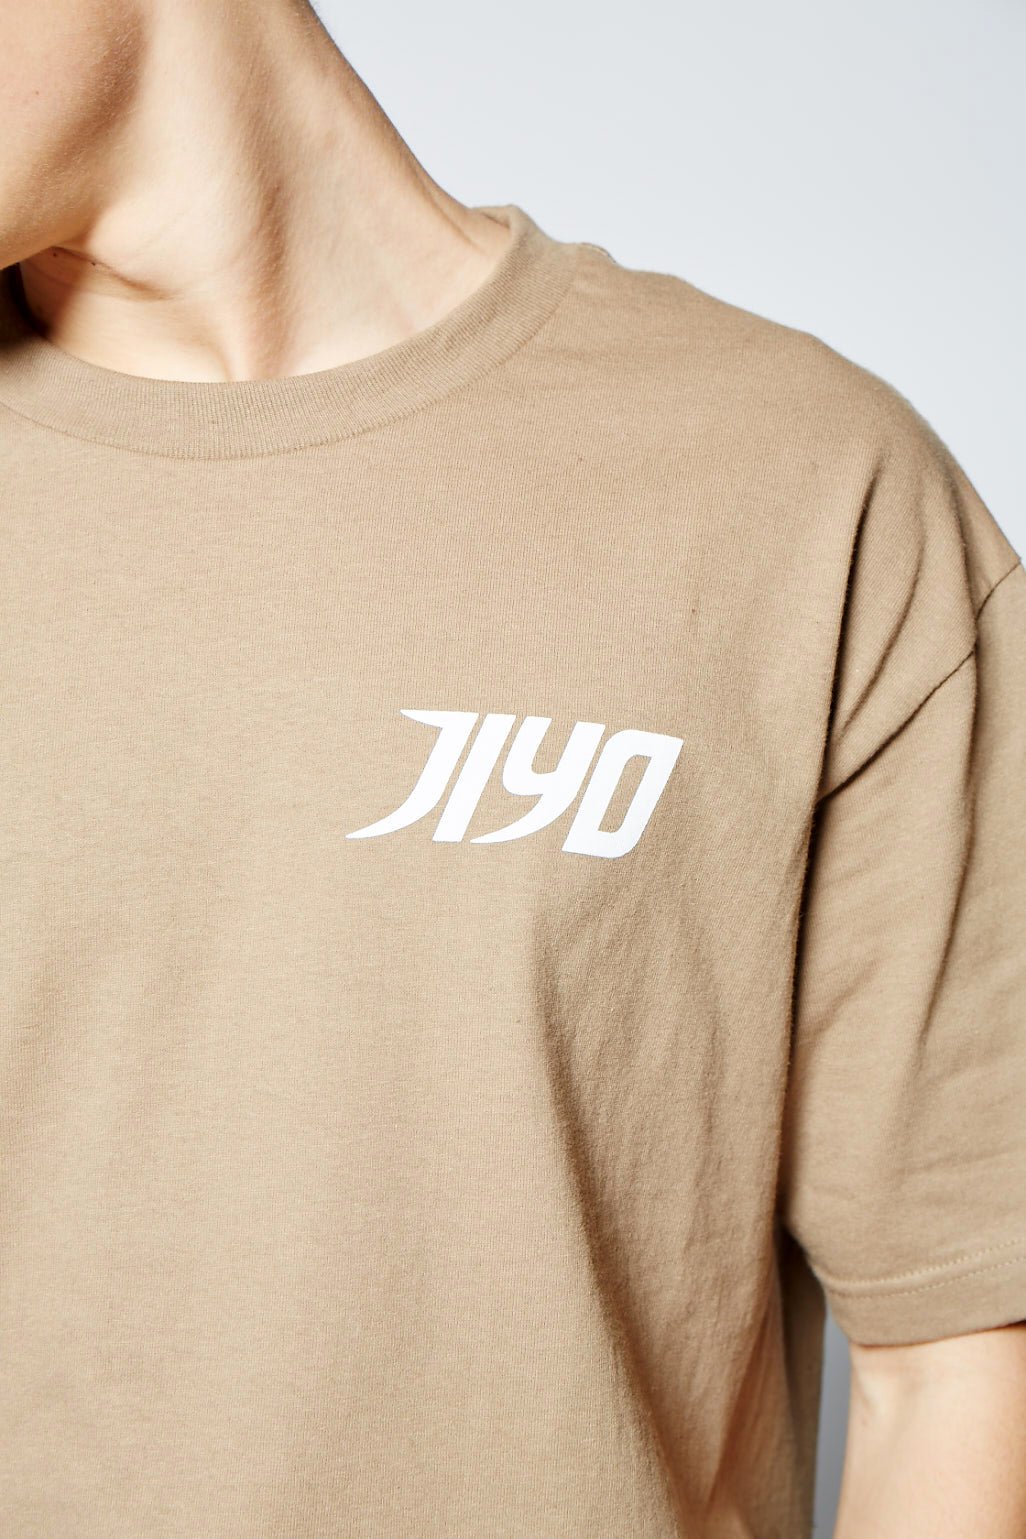 MOZAIC JIYO TEE, SAND - Shirts - JIYO WEAR